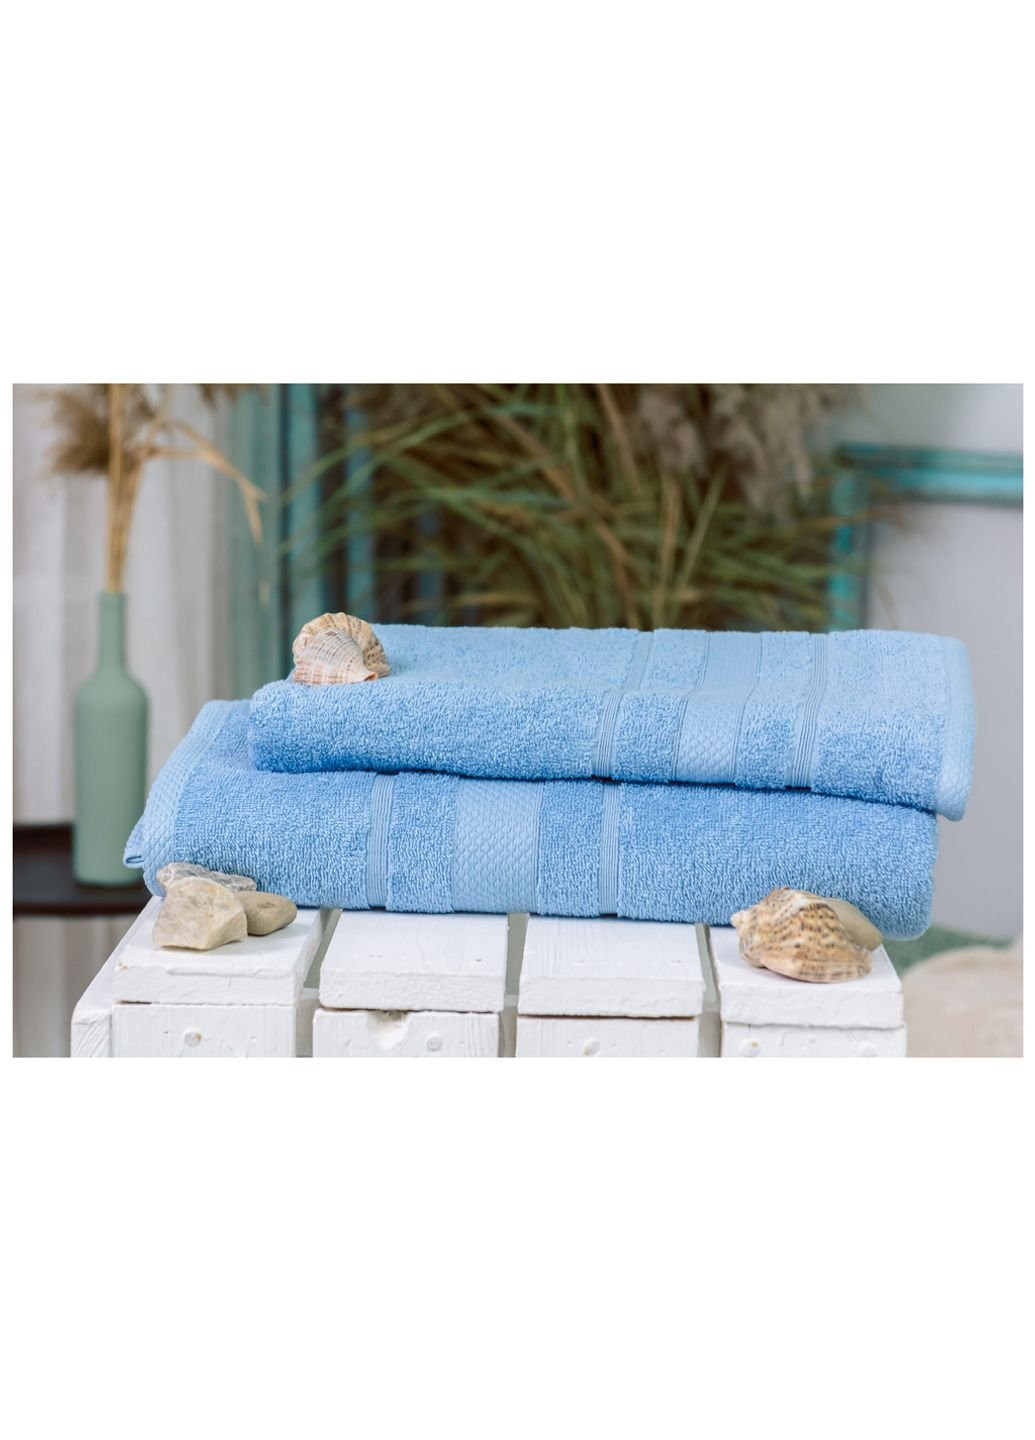 Mirson полотенце набор банный №5002 softness cornflower 50x90, 70x140 (2200003182941) голубой производство - Украина